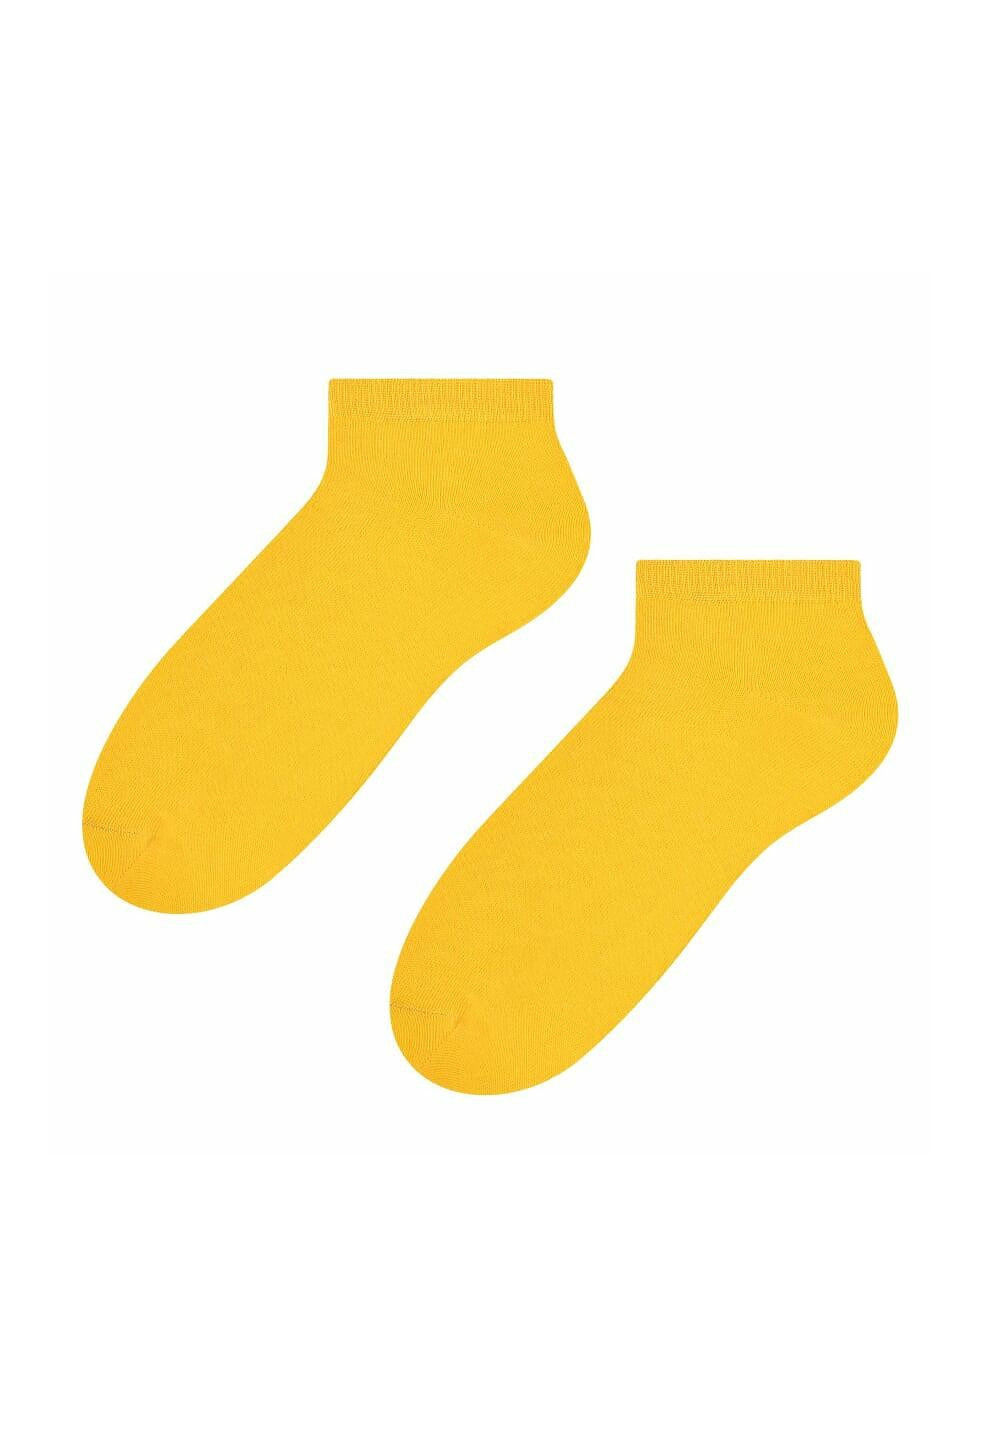 Hladké dámské ponožky Steven art.052 chrpa 35-37